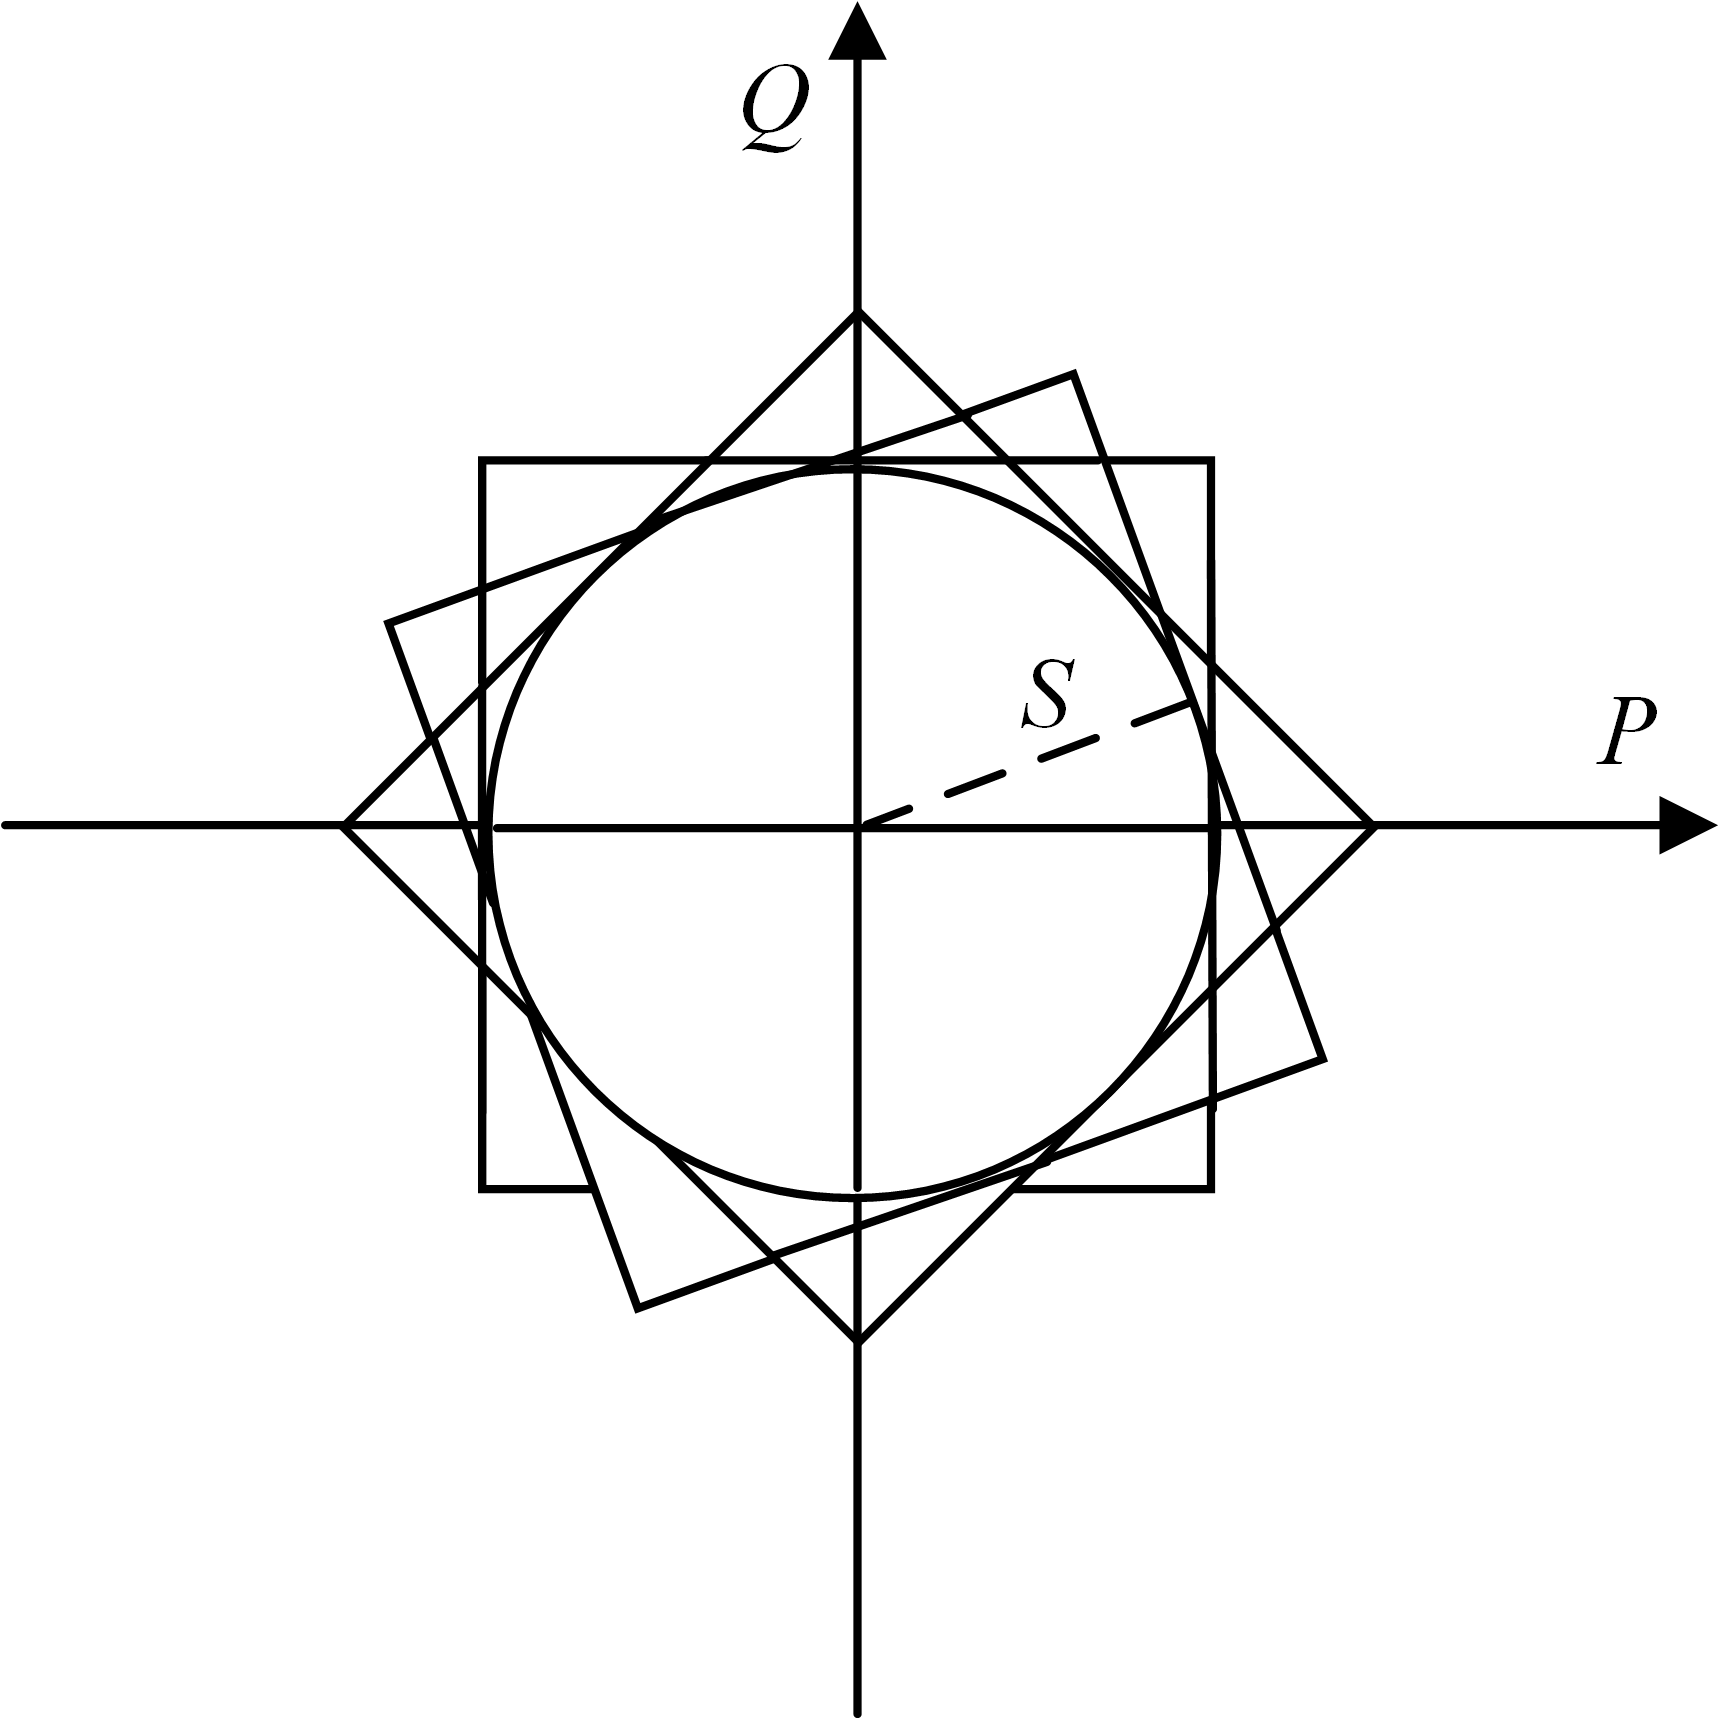 二次圆约束线性化方法示意图